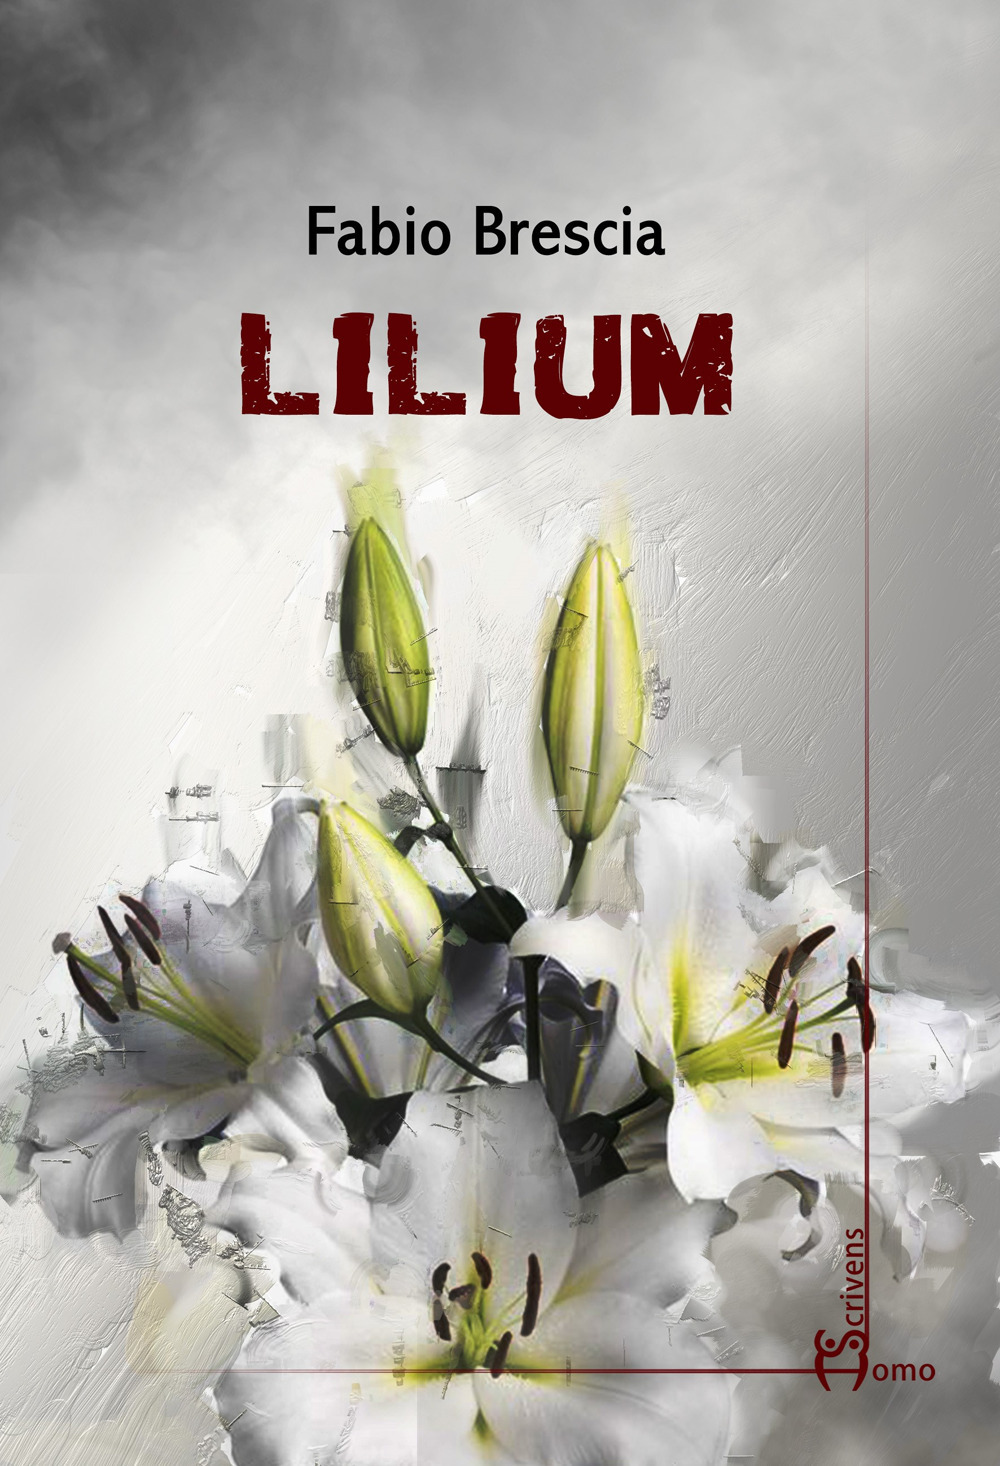 Lilium